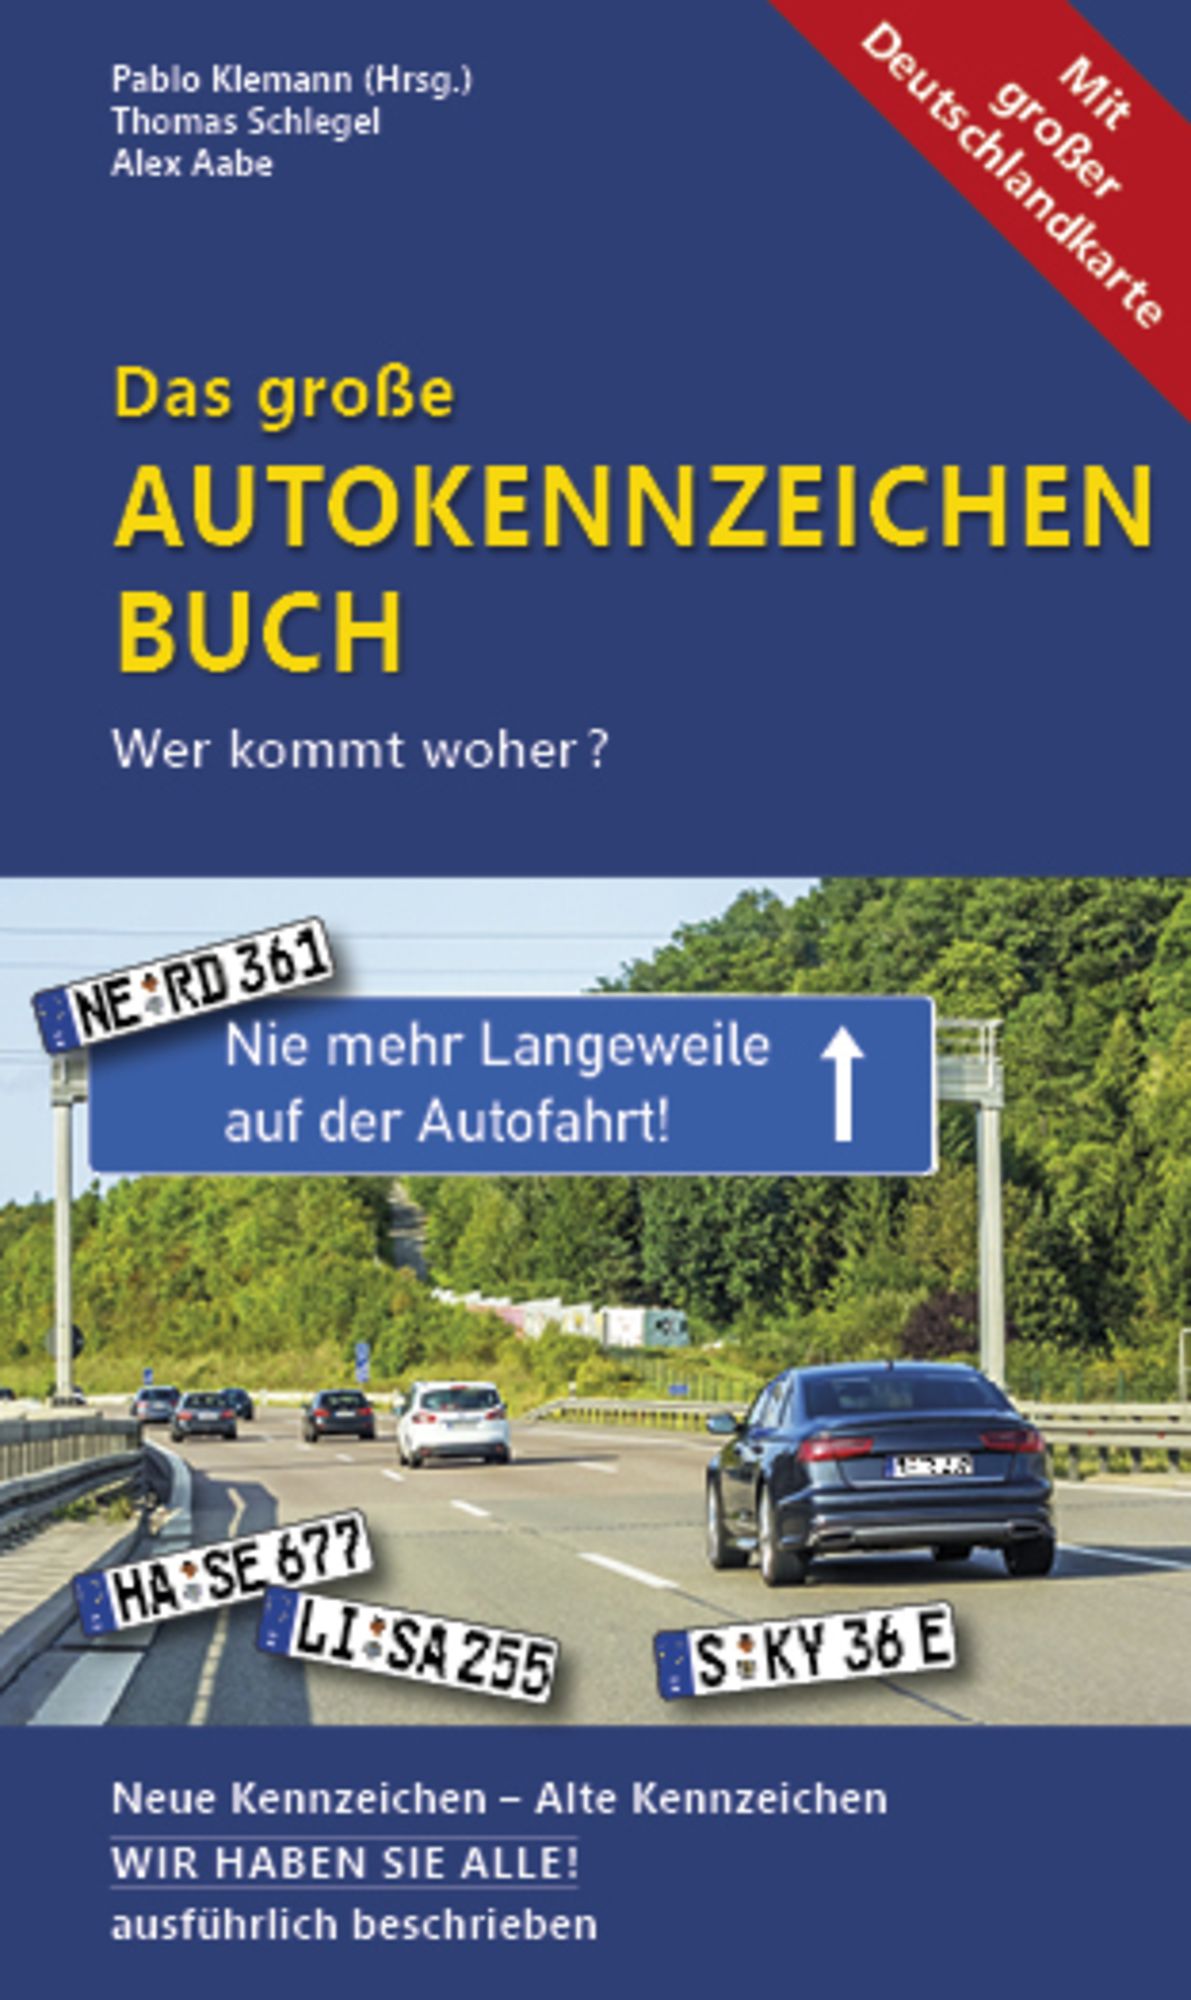 Das große Autokennzeichen Buch' von 'Thomas Schlegel' - Buch -  '978-3-86112-355-2